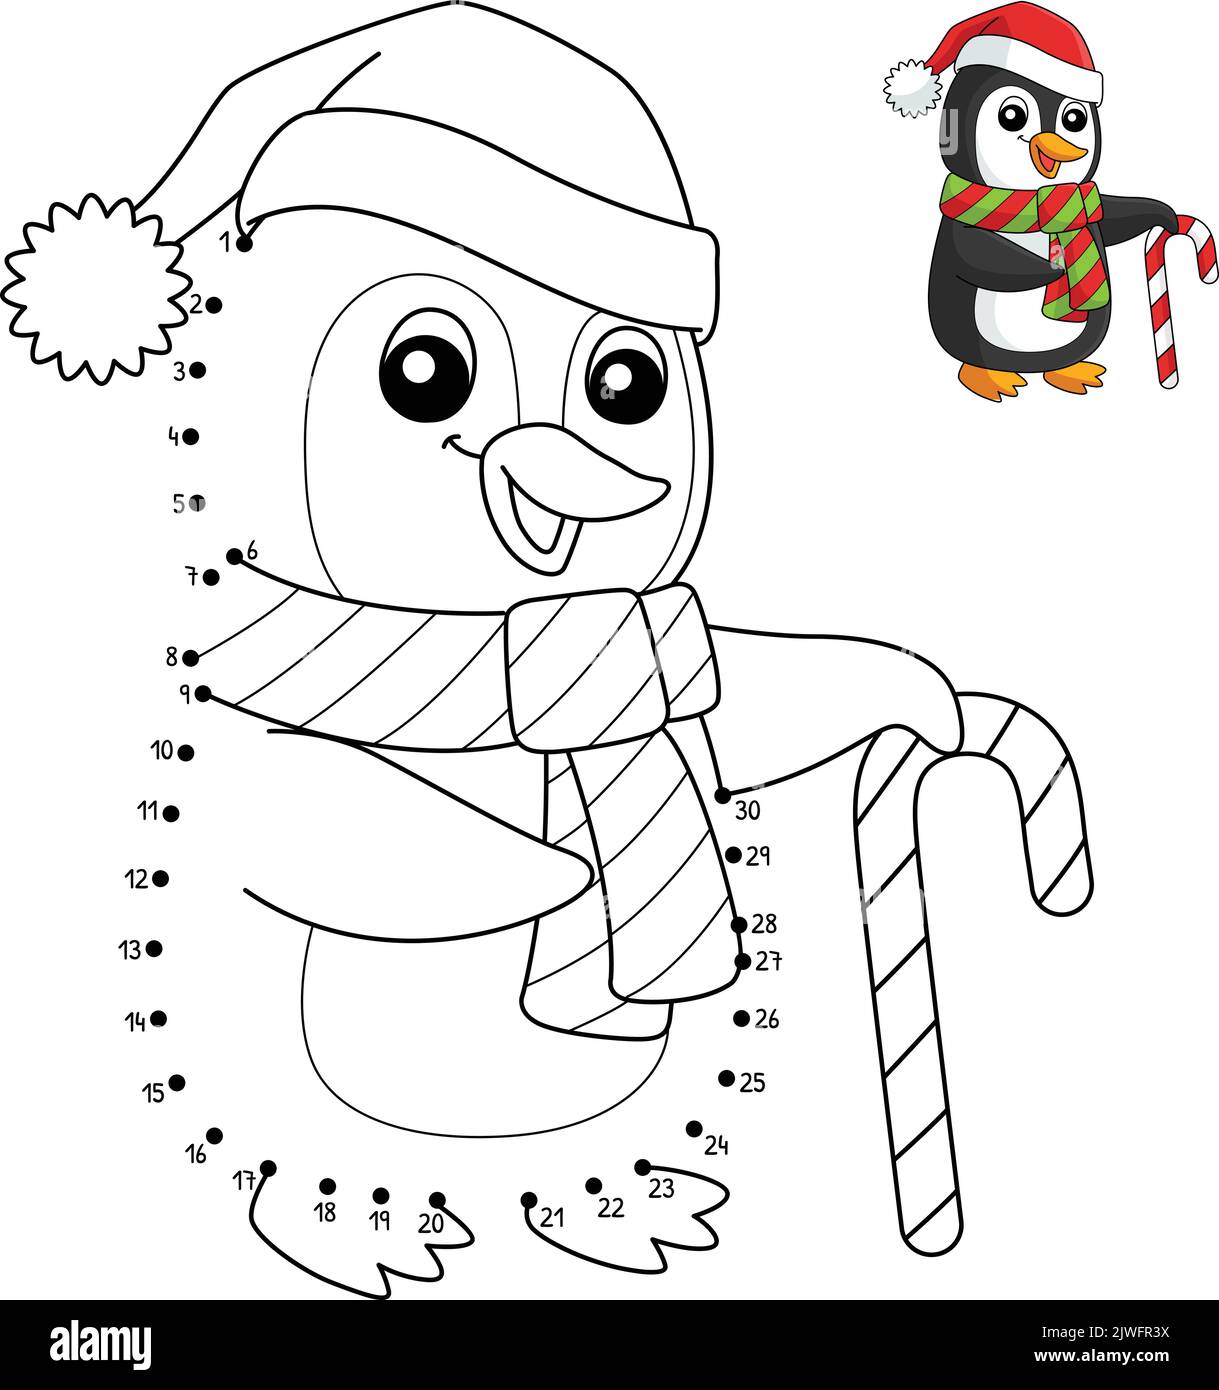 Weihnachten zum ausmalen Buch oder Seite. Weihnachts Pinguin ...